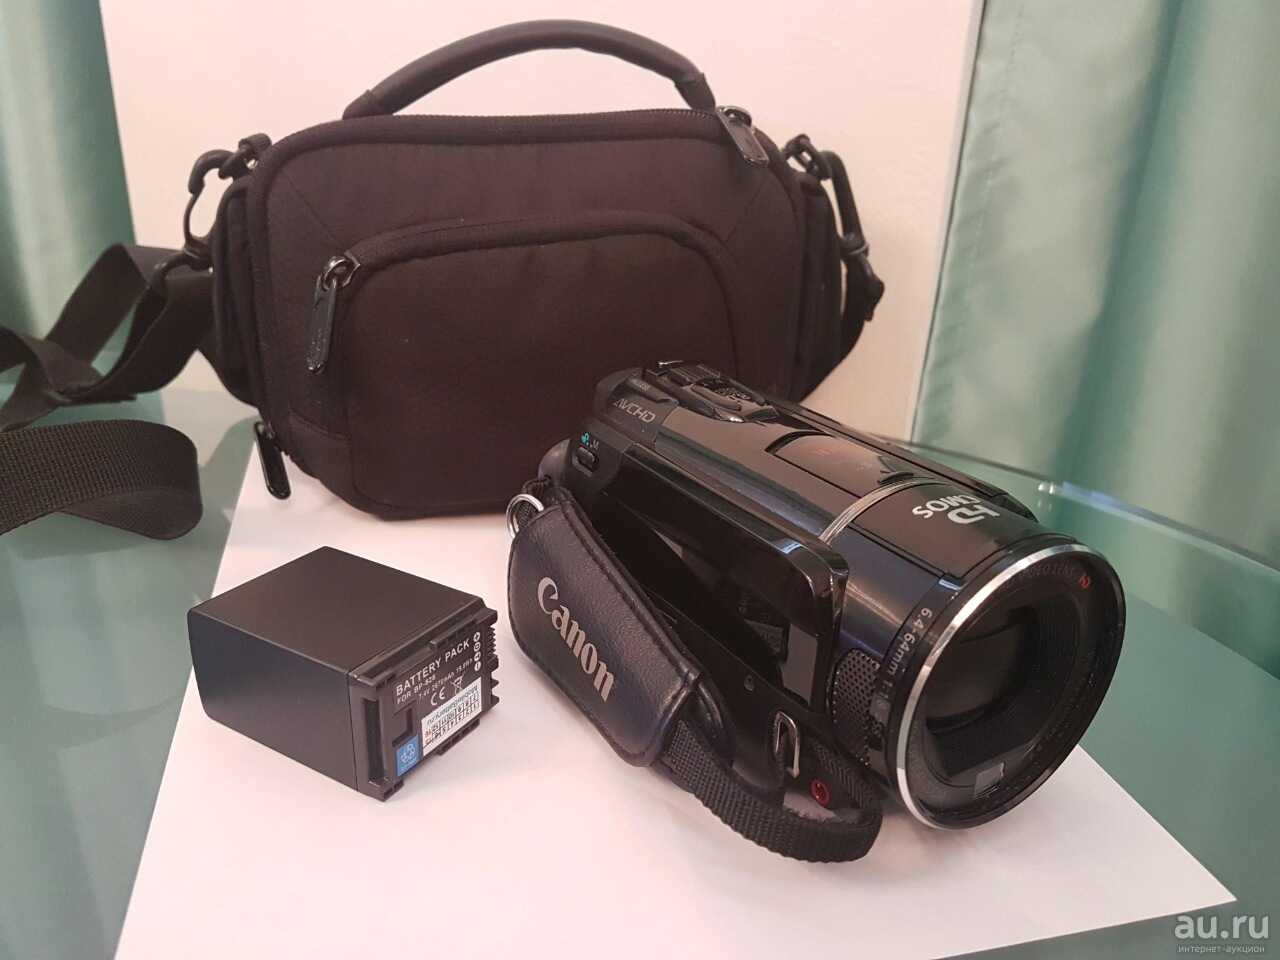 Видеокамера canon legria hf m52 — купить, цена и характеристики, отзывы